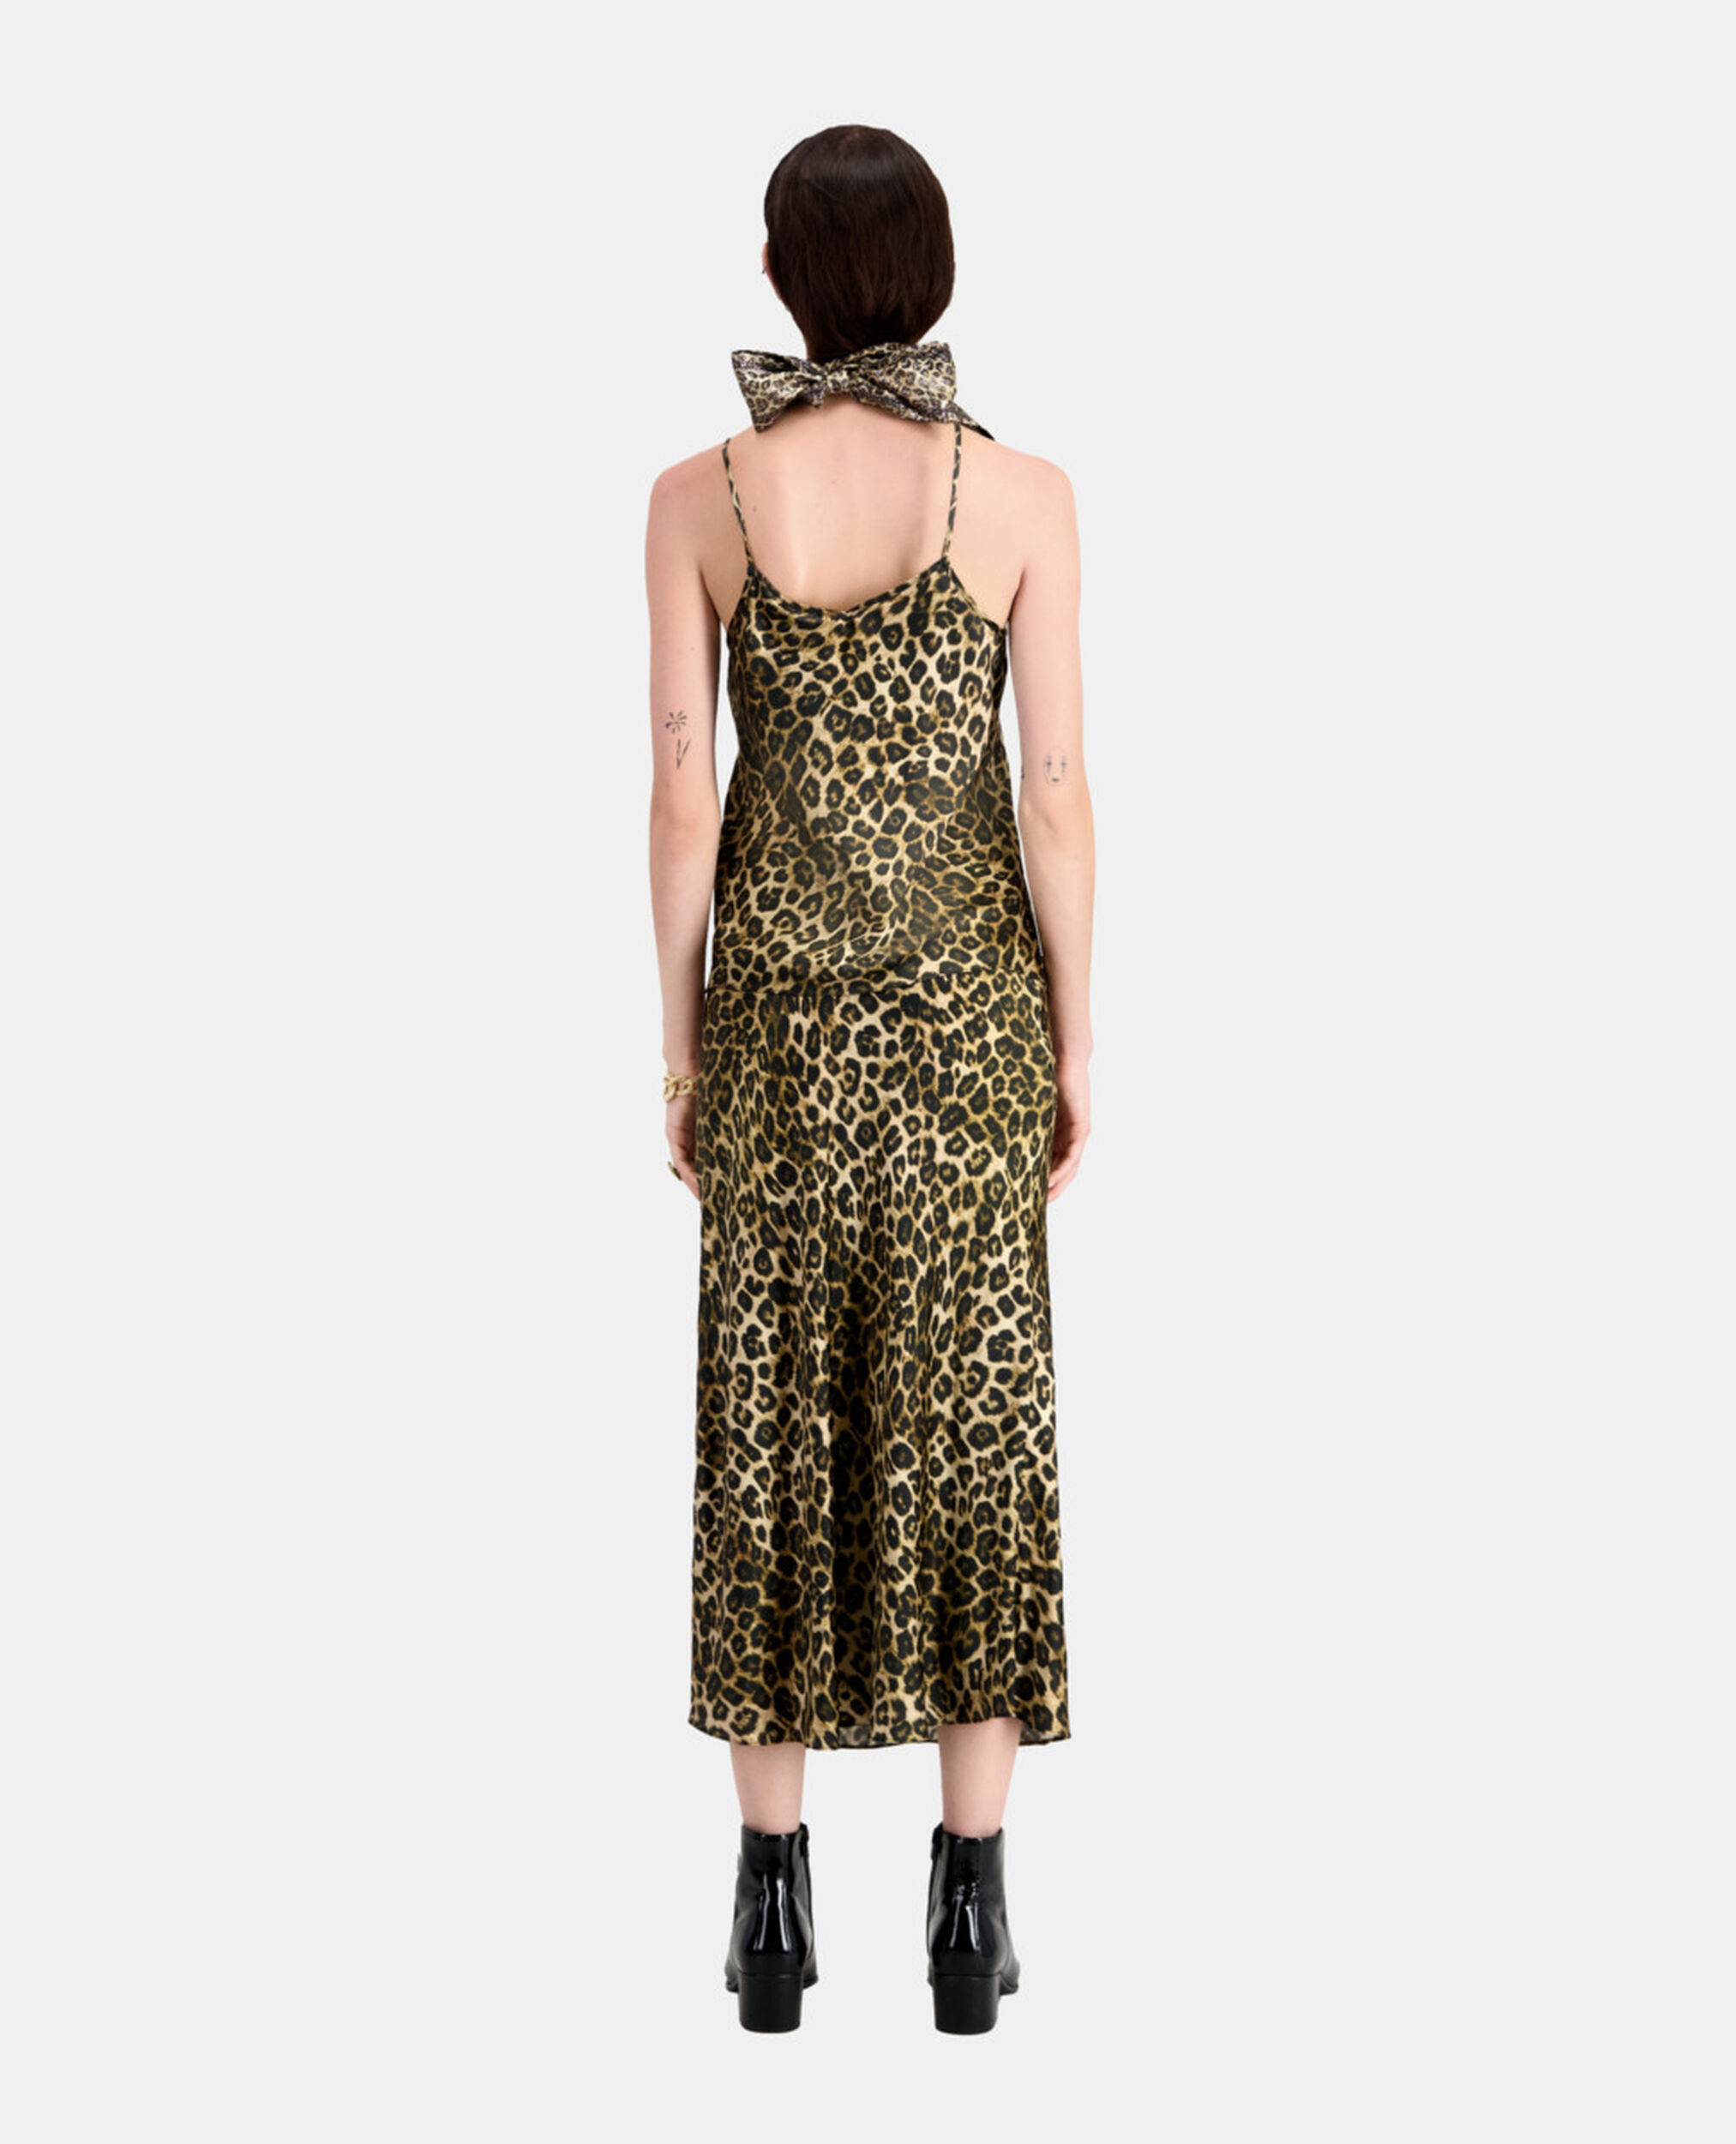 Camiseta interior de seda leopardo, LEOPARD, hi-res image number null